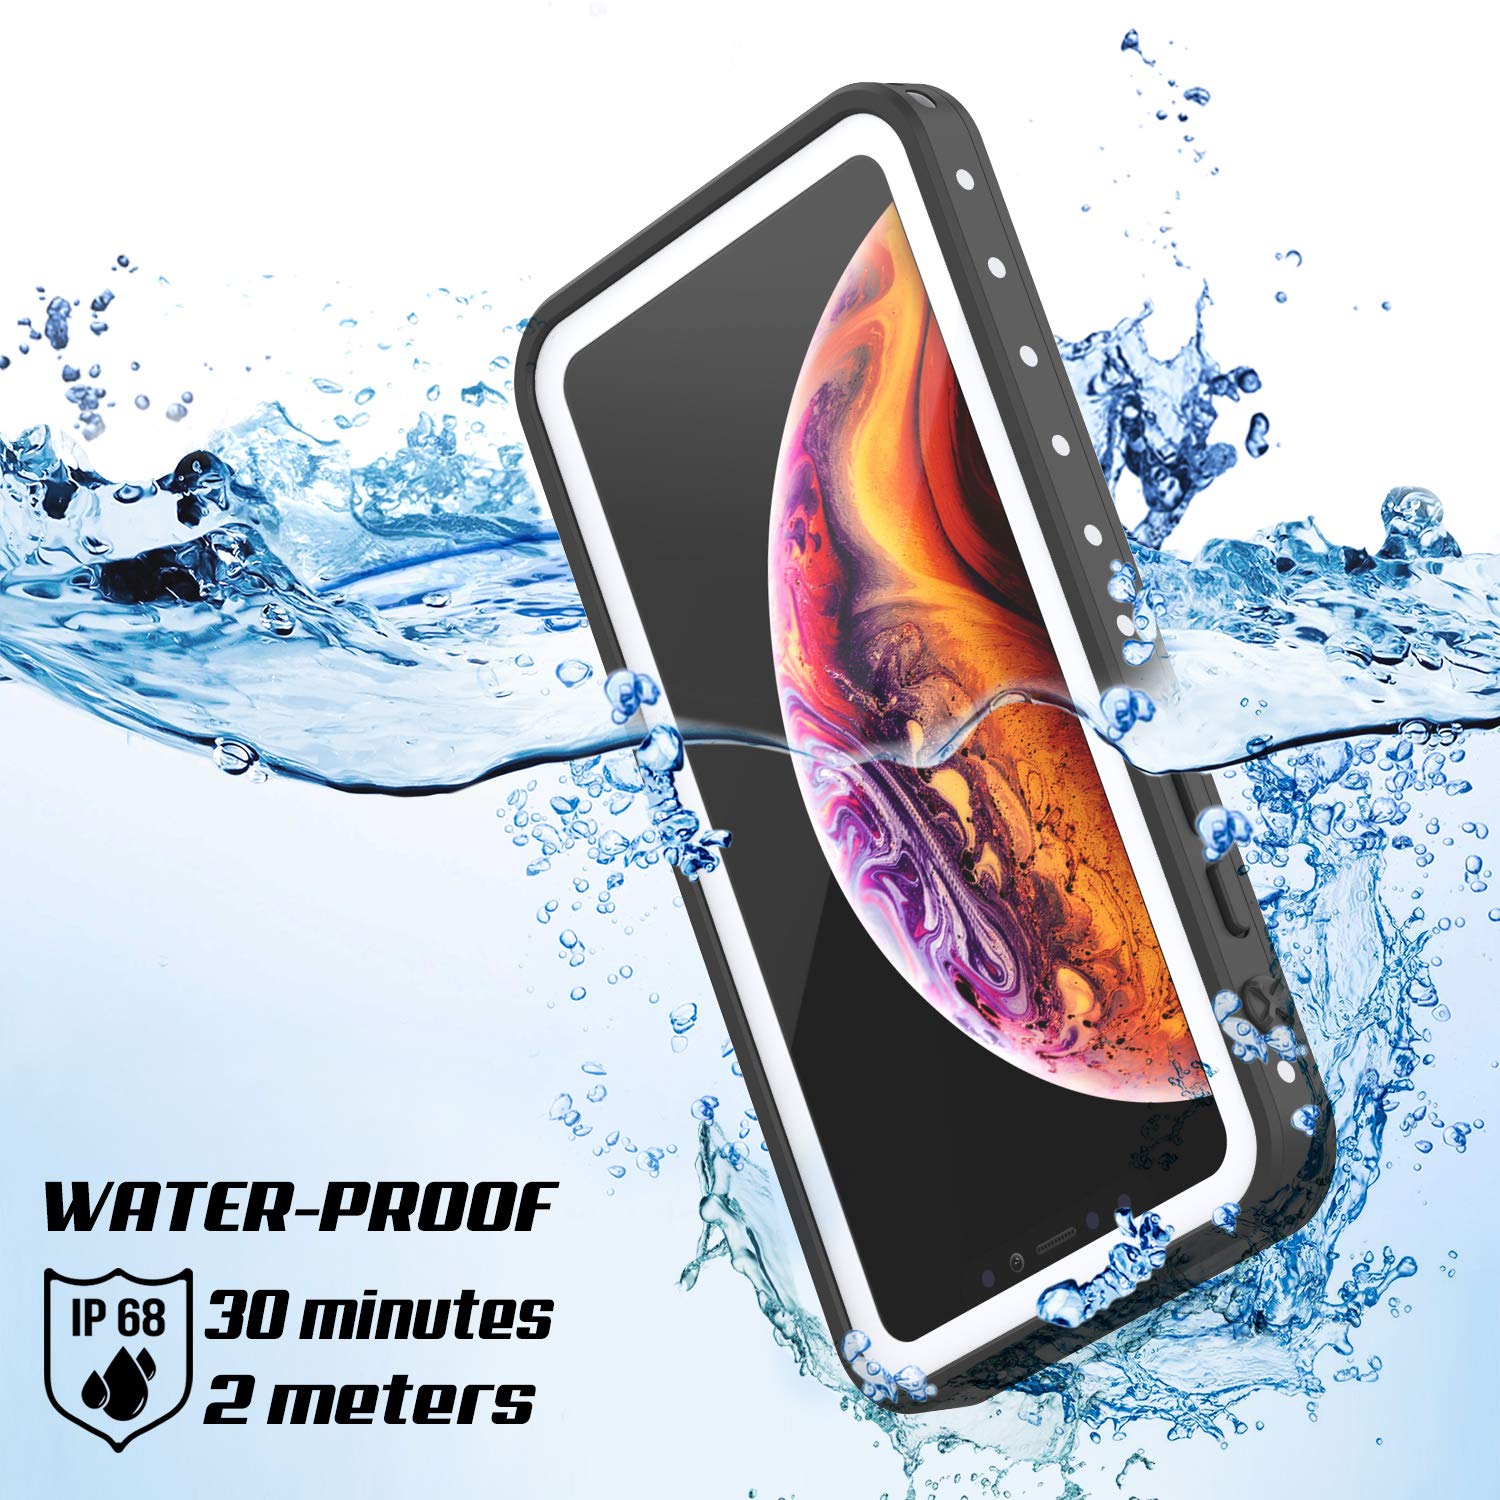 iPhone XS Max Waterproof IP68 Case, Punkcase [White] [StudStar Series] [Slim Fit] [Dirtproof]